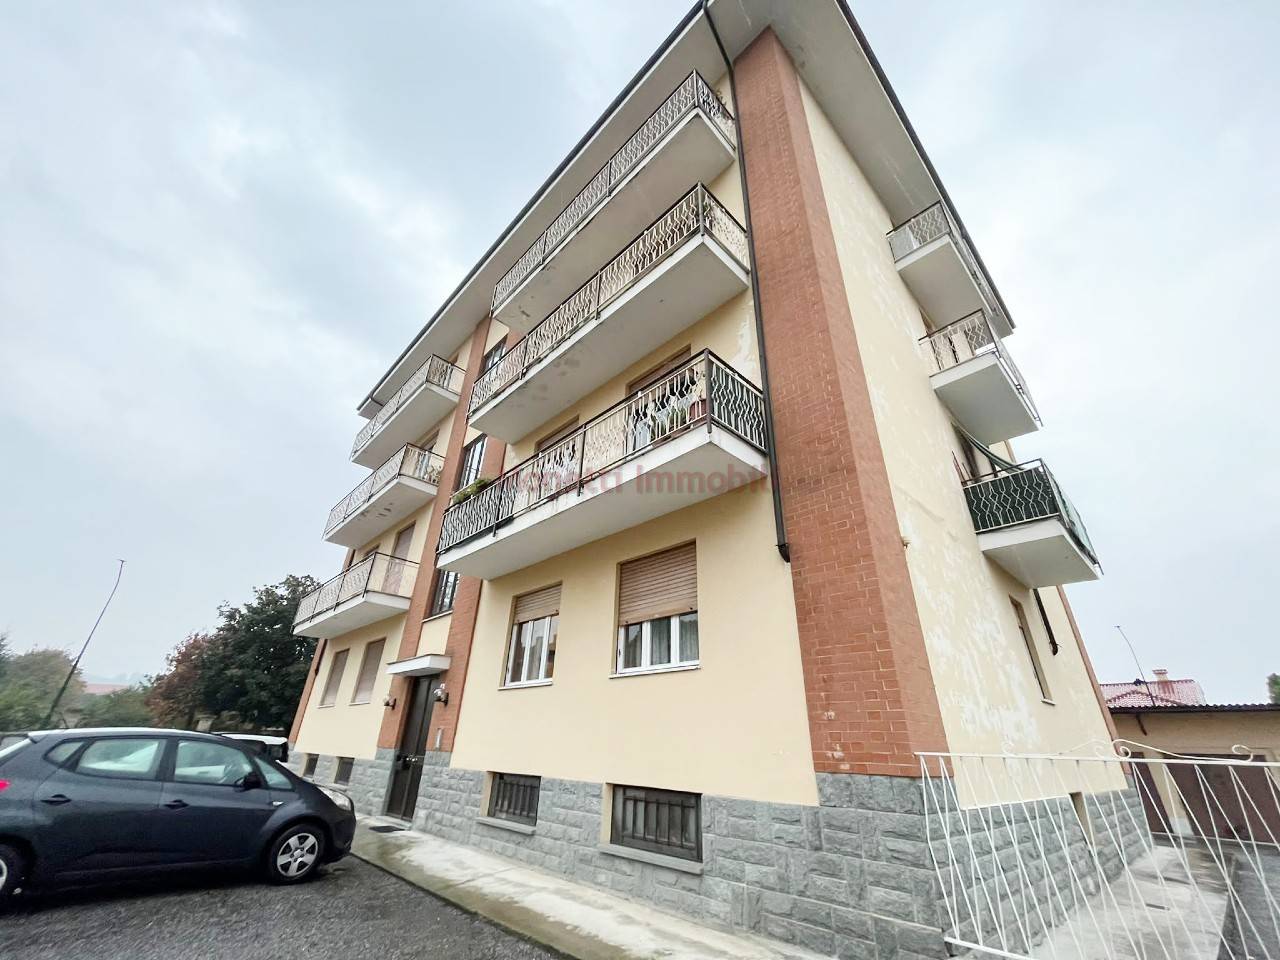 Appartamento in affitto a Bibiana, 4 locali, prezzo € 450 | PortaleAgenzieImmobiliari.it